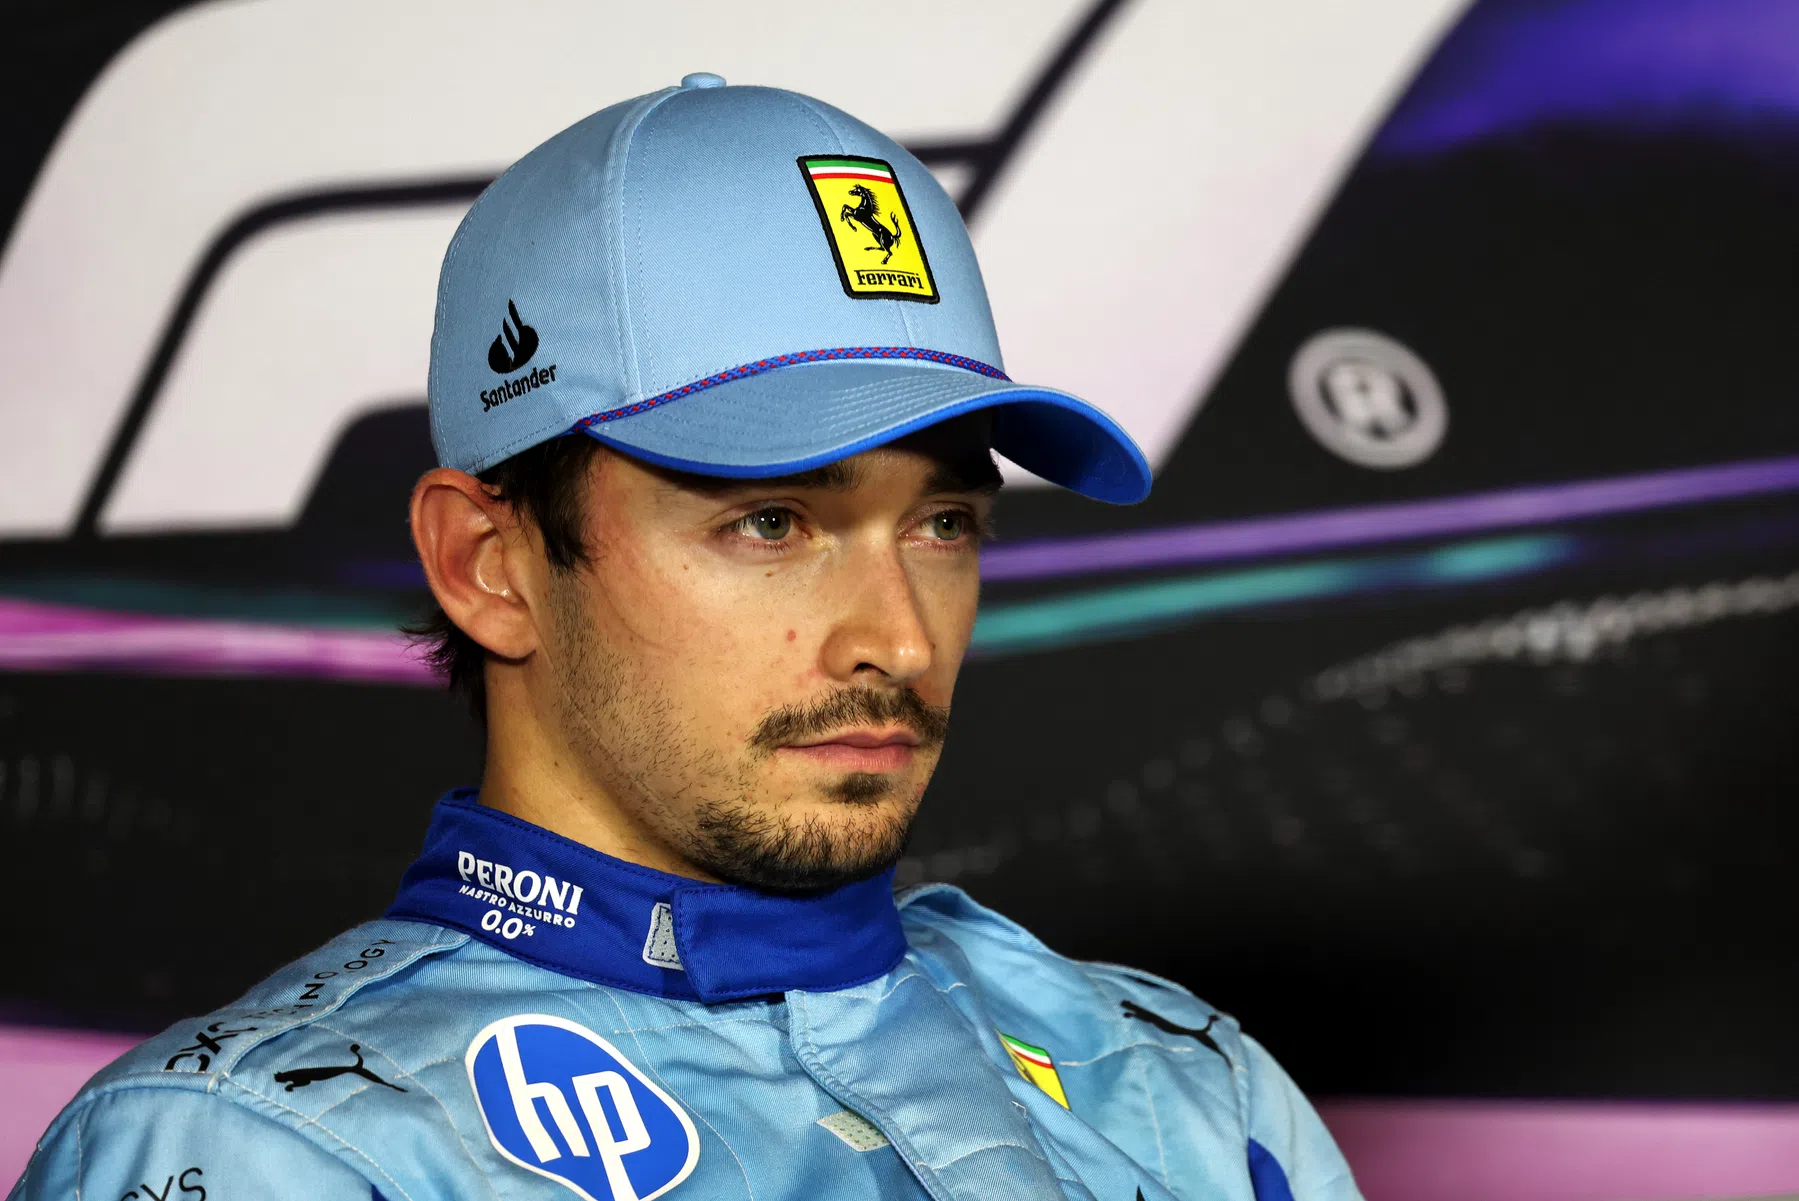 Leclerc intende attaccare Verstappen alla prima curva del Gran Premio di Miami